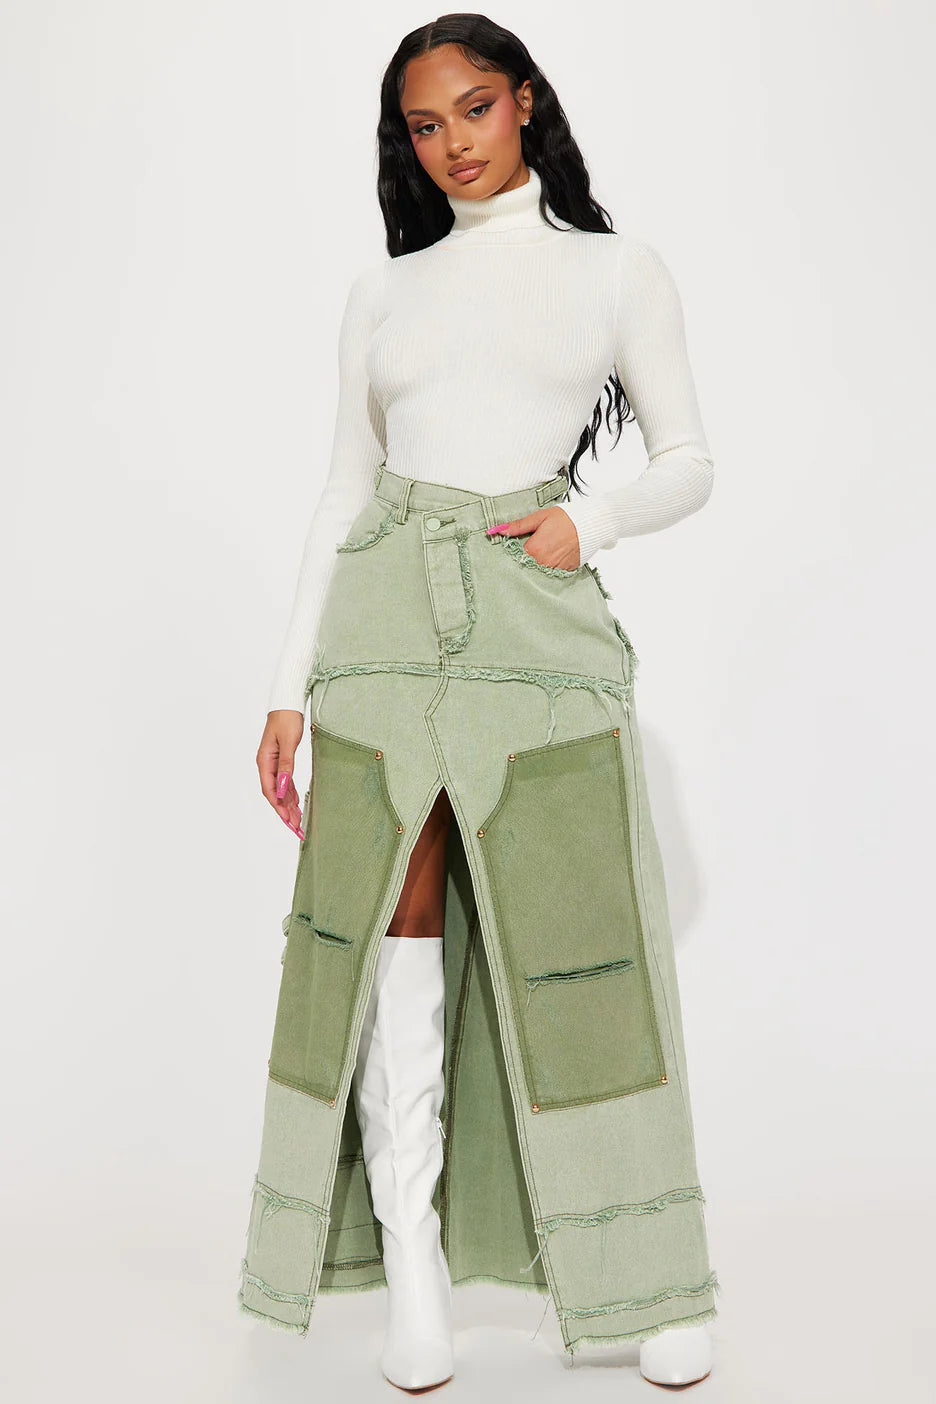 Fashionnova Tell Me Why Denim Maxi Skirt